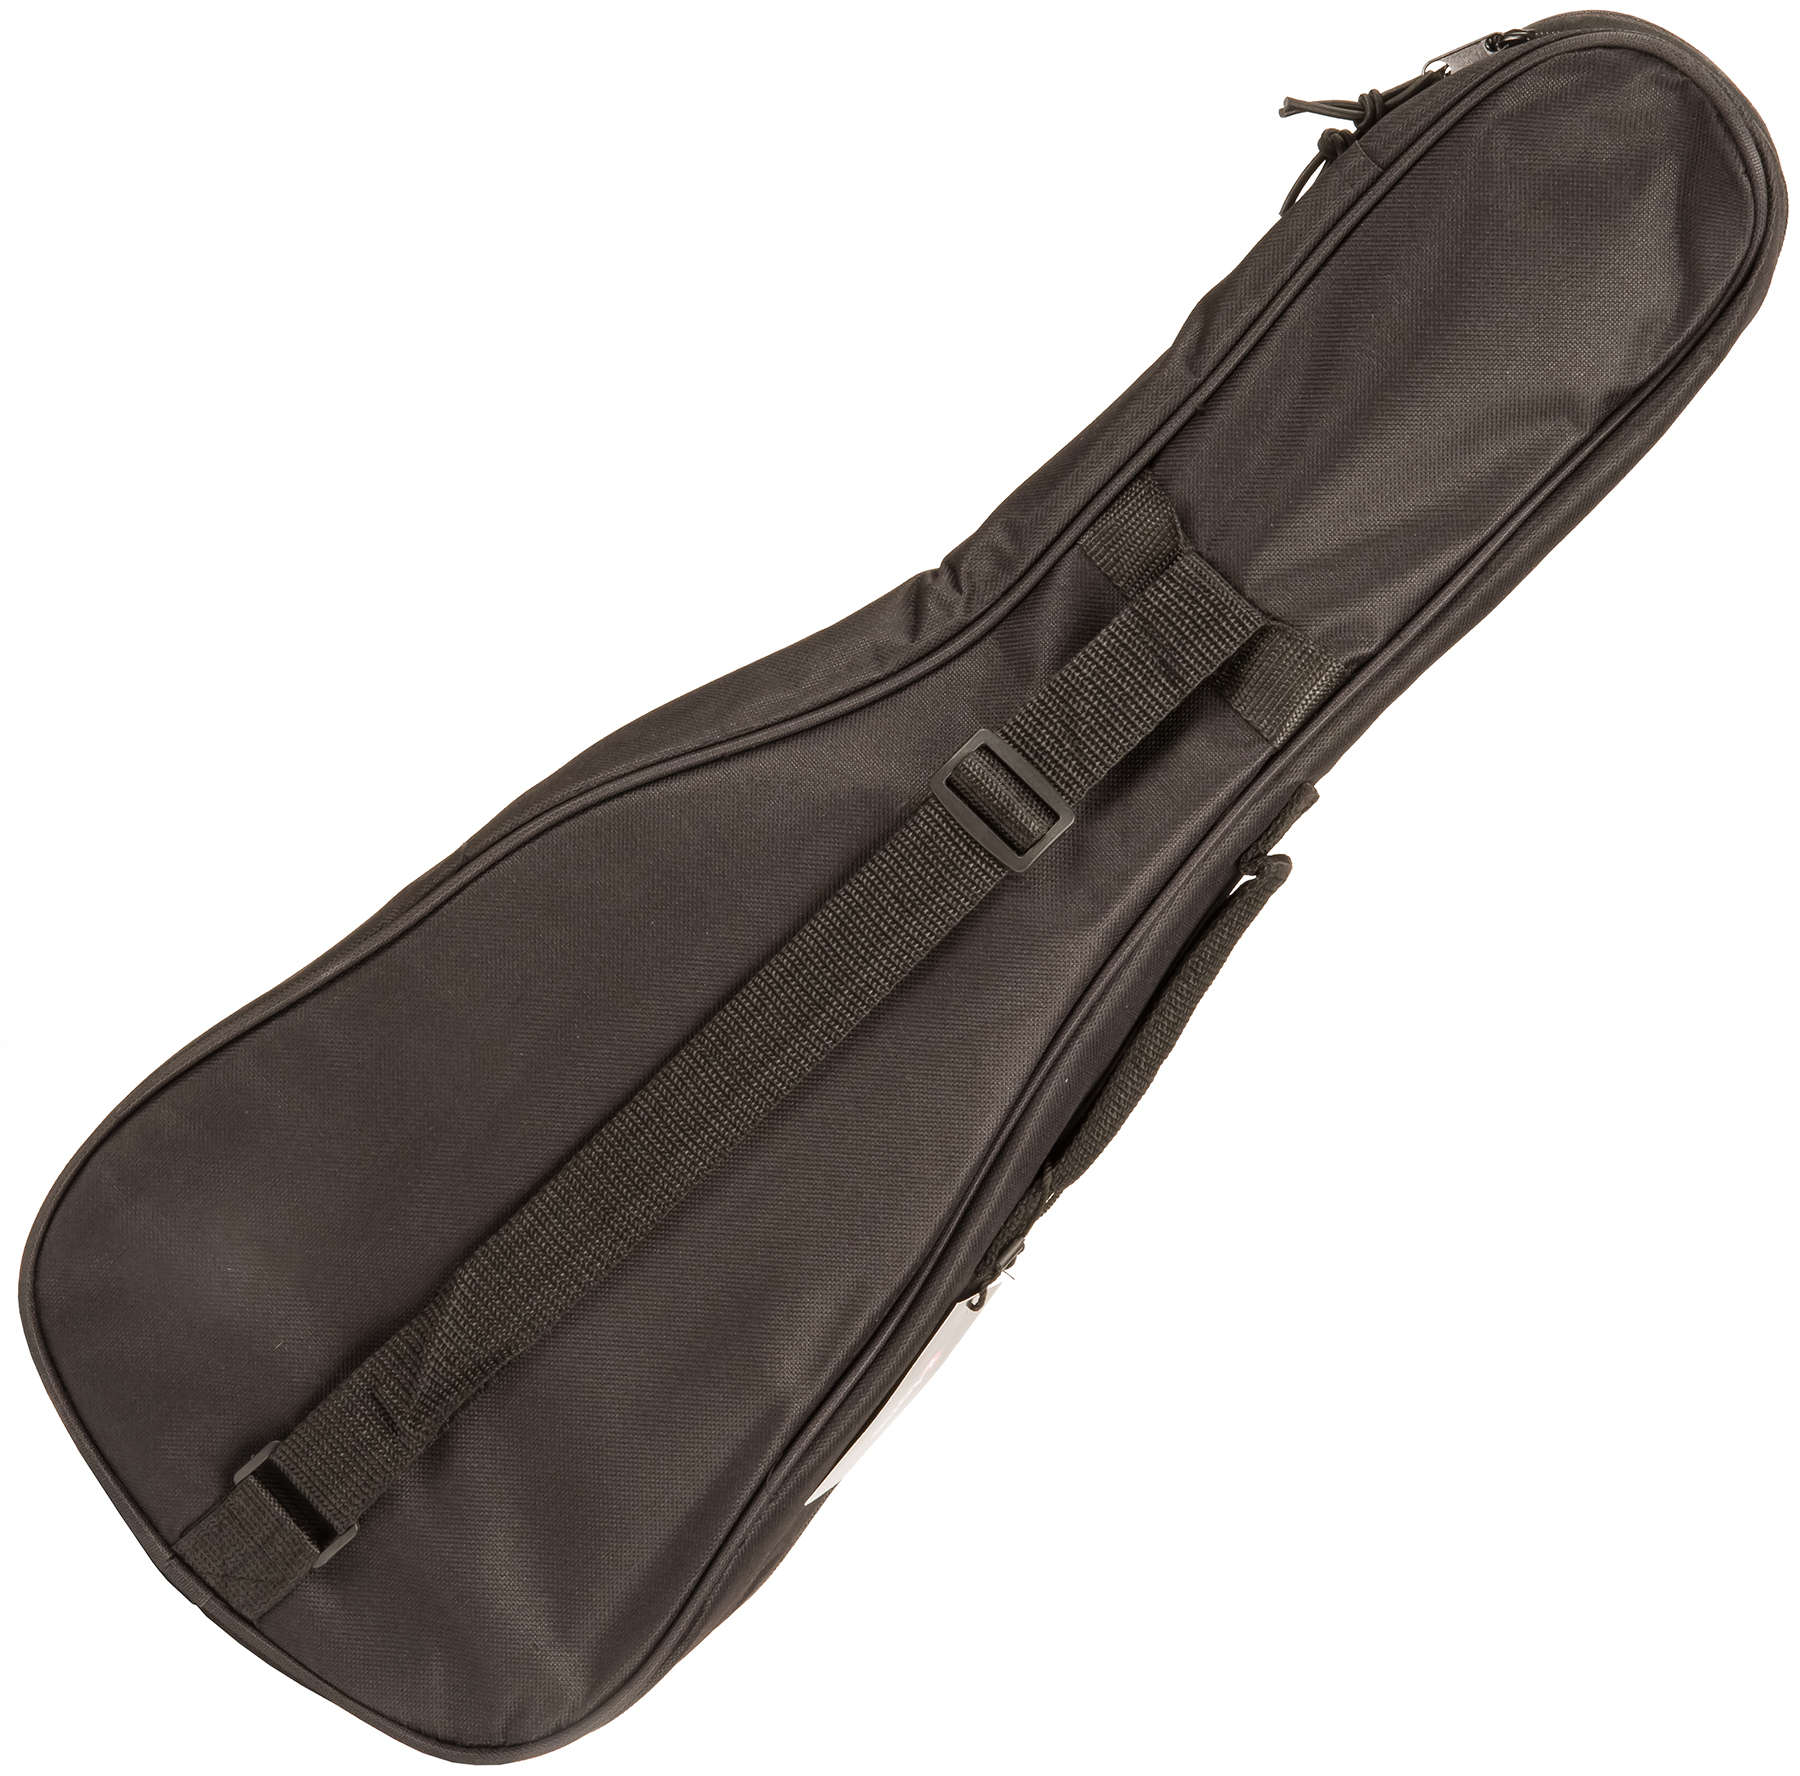 X-tone 2020 Ukulele Soprano Bag 3mm - Ukulele gig bag - Variation 1